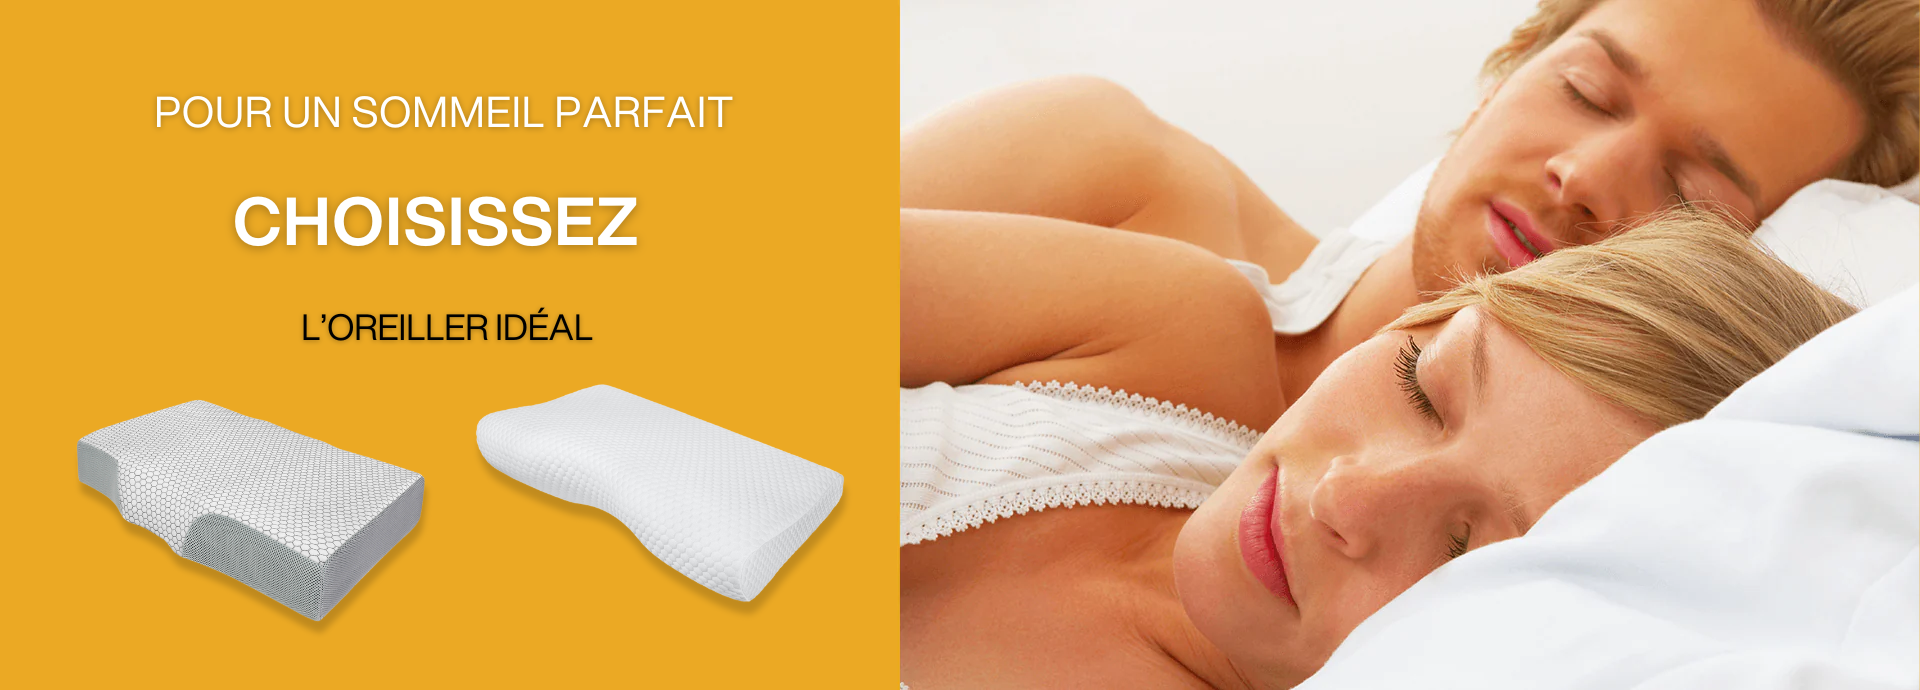 Un oreiller ideal pour un sommeil Inphysio.fr